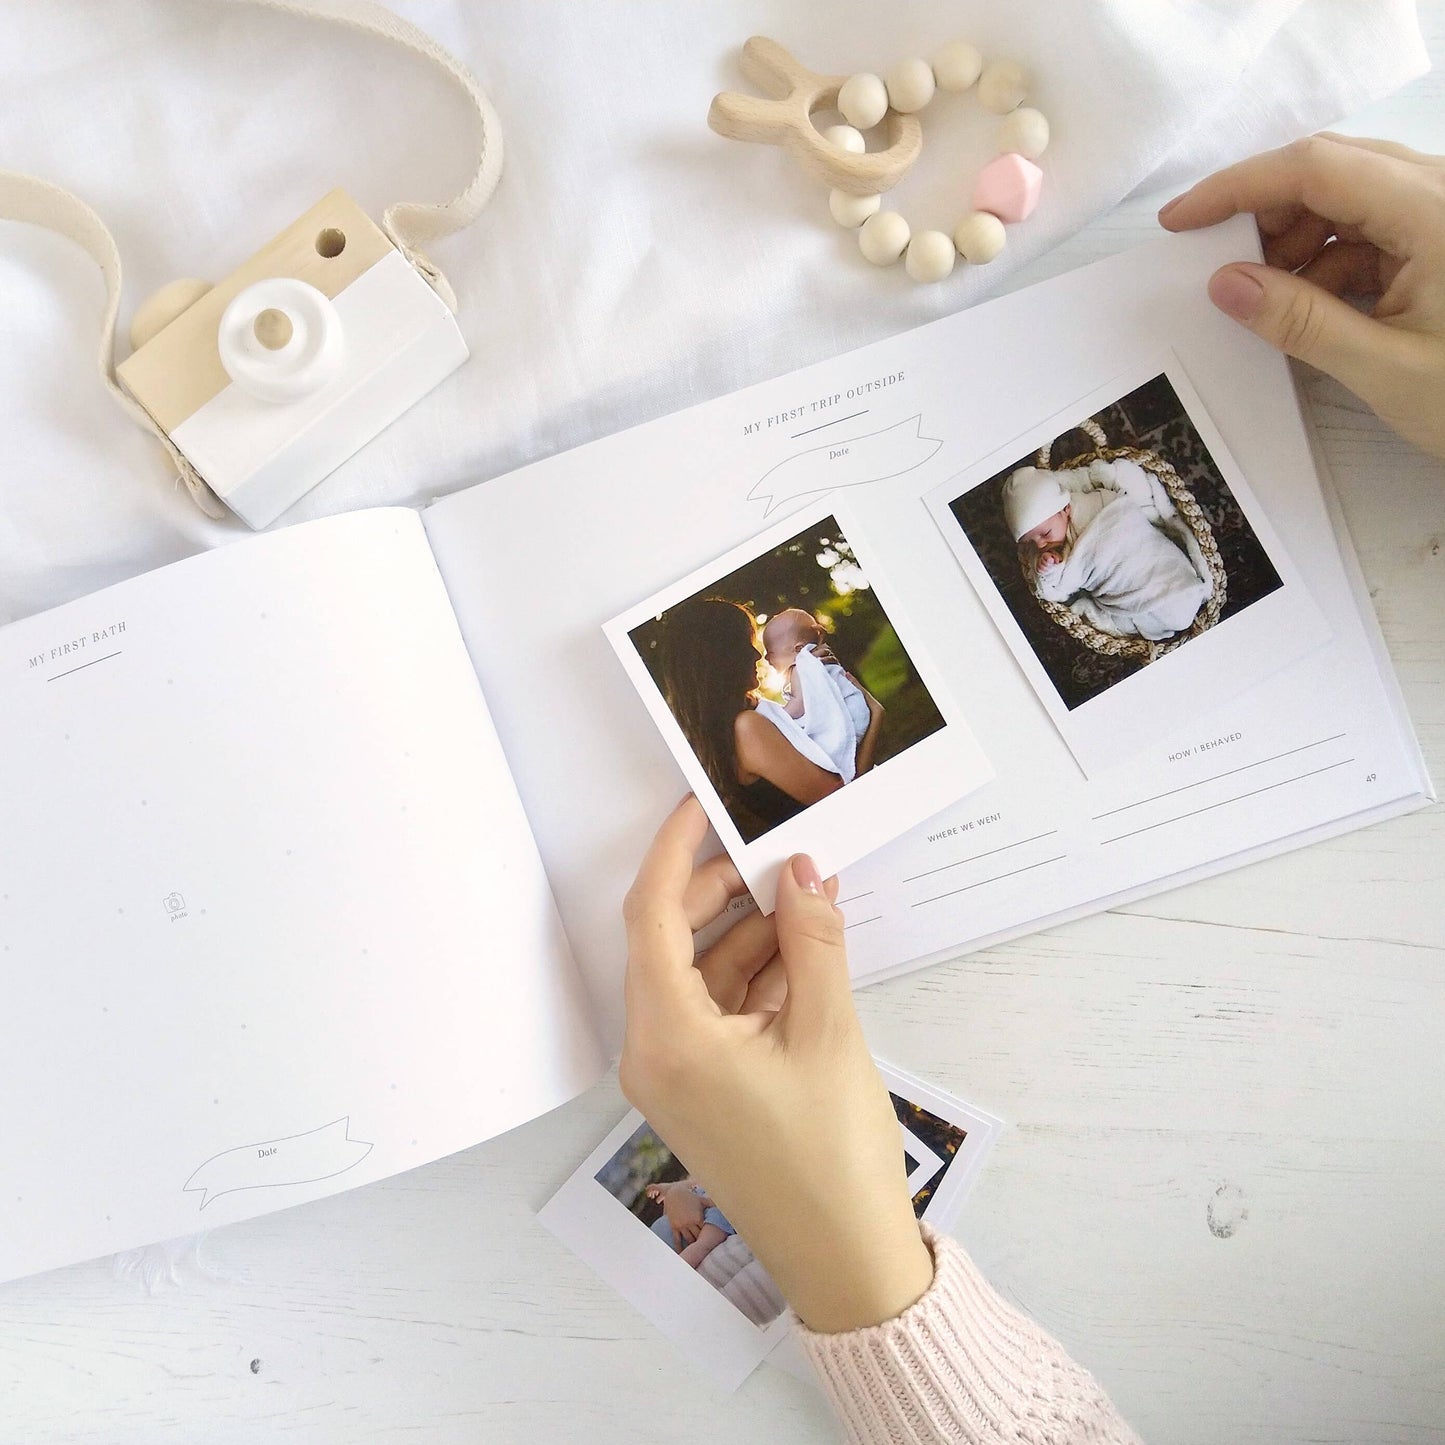 My Baby Journal (Ivory) newborn keepsake memory book gift